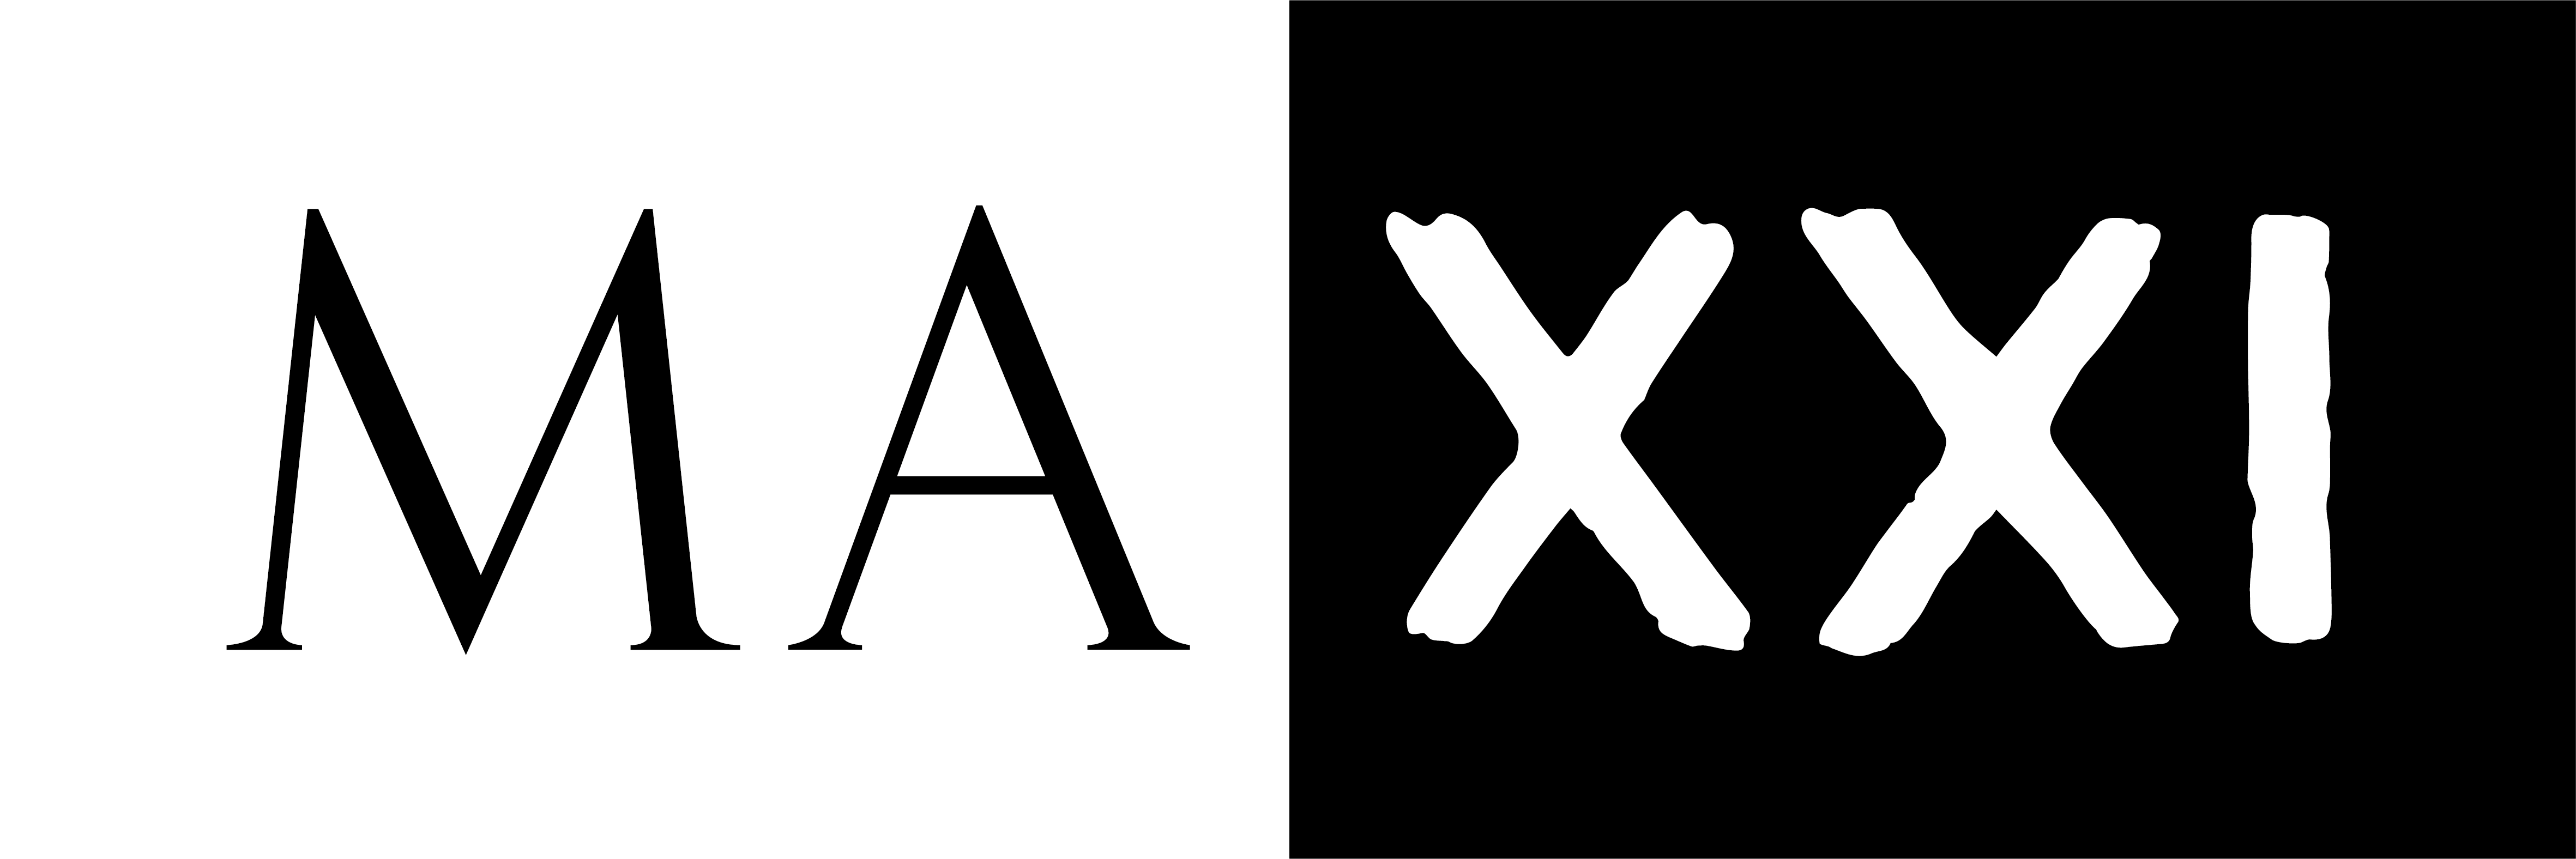 logo MAXXI